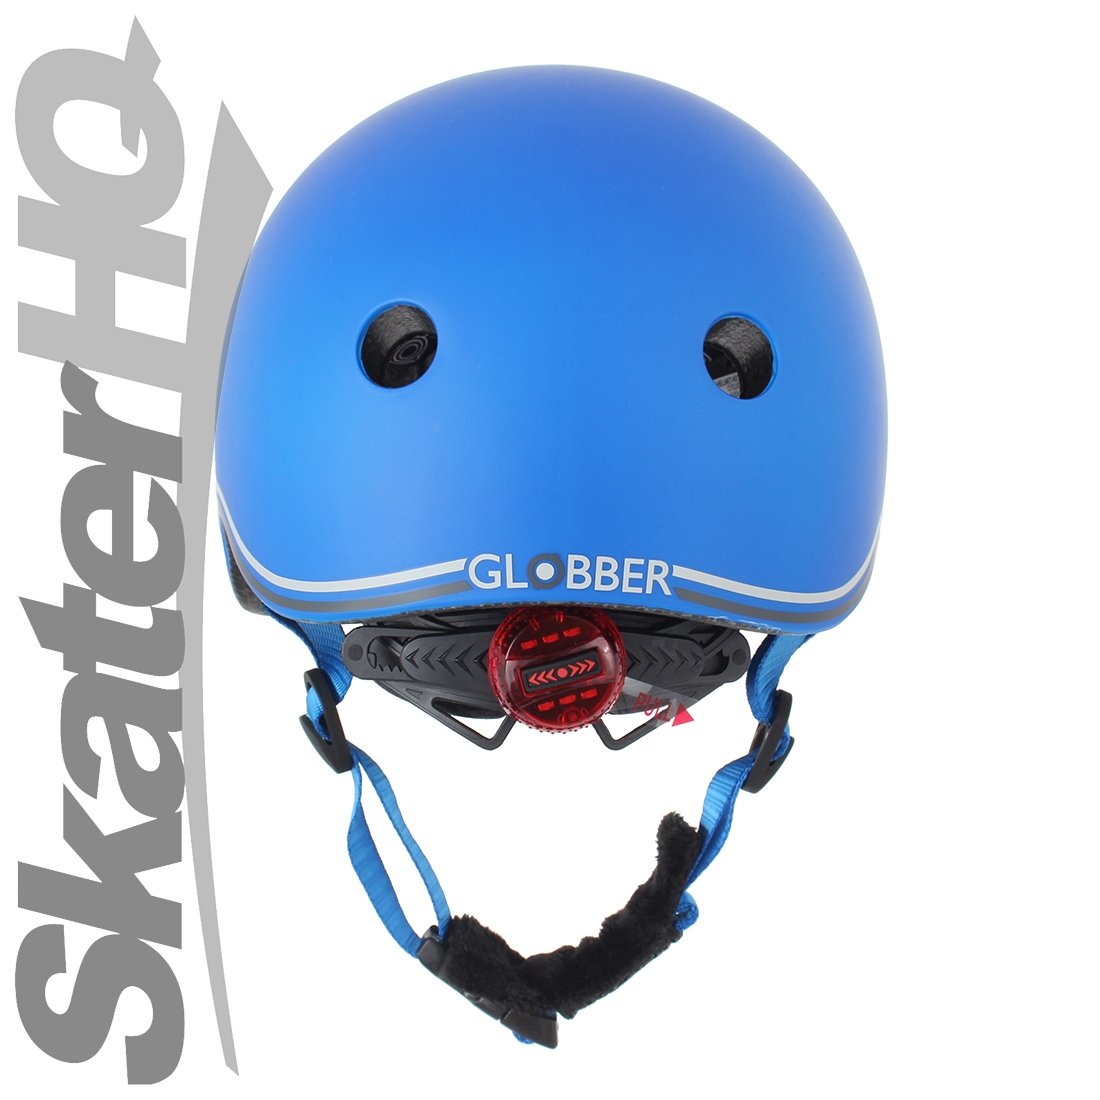 Globber LED Kids Helmet - Navy Blue - XS/S Helmets